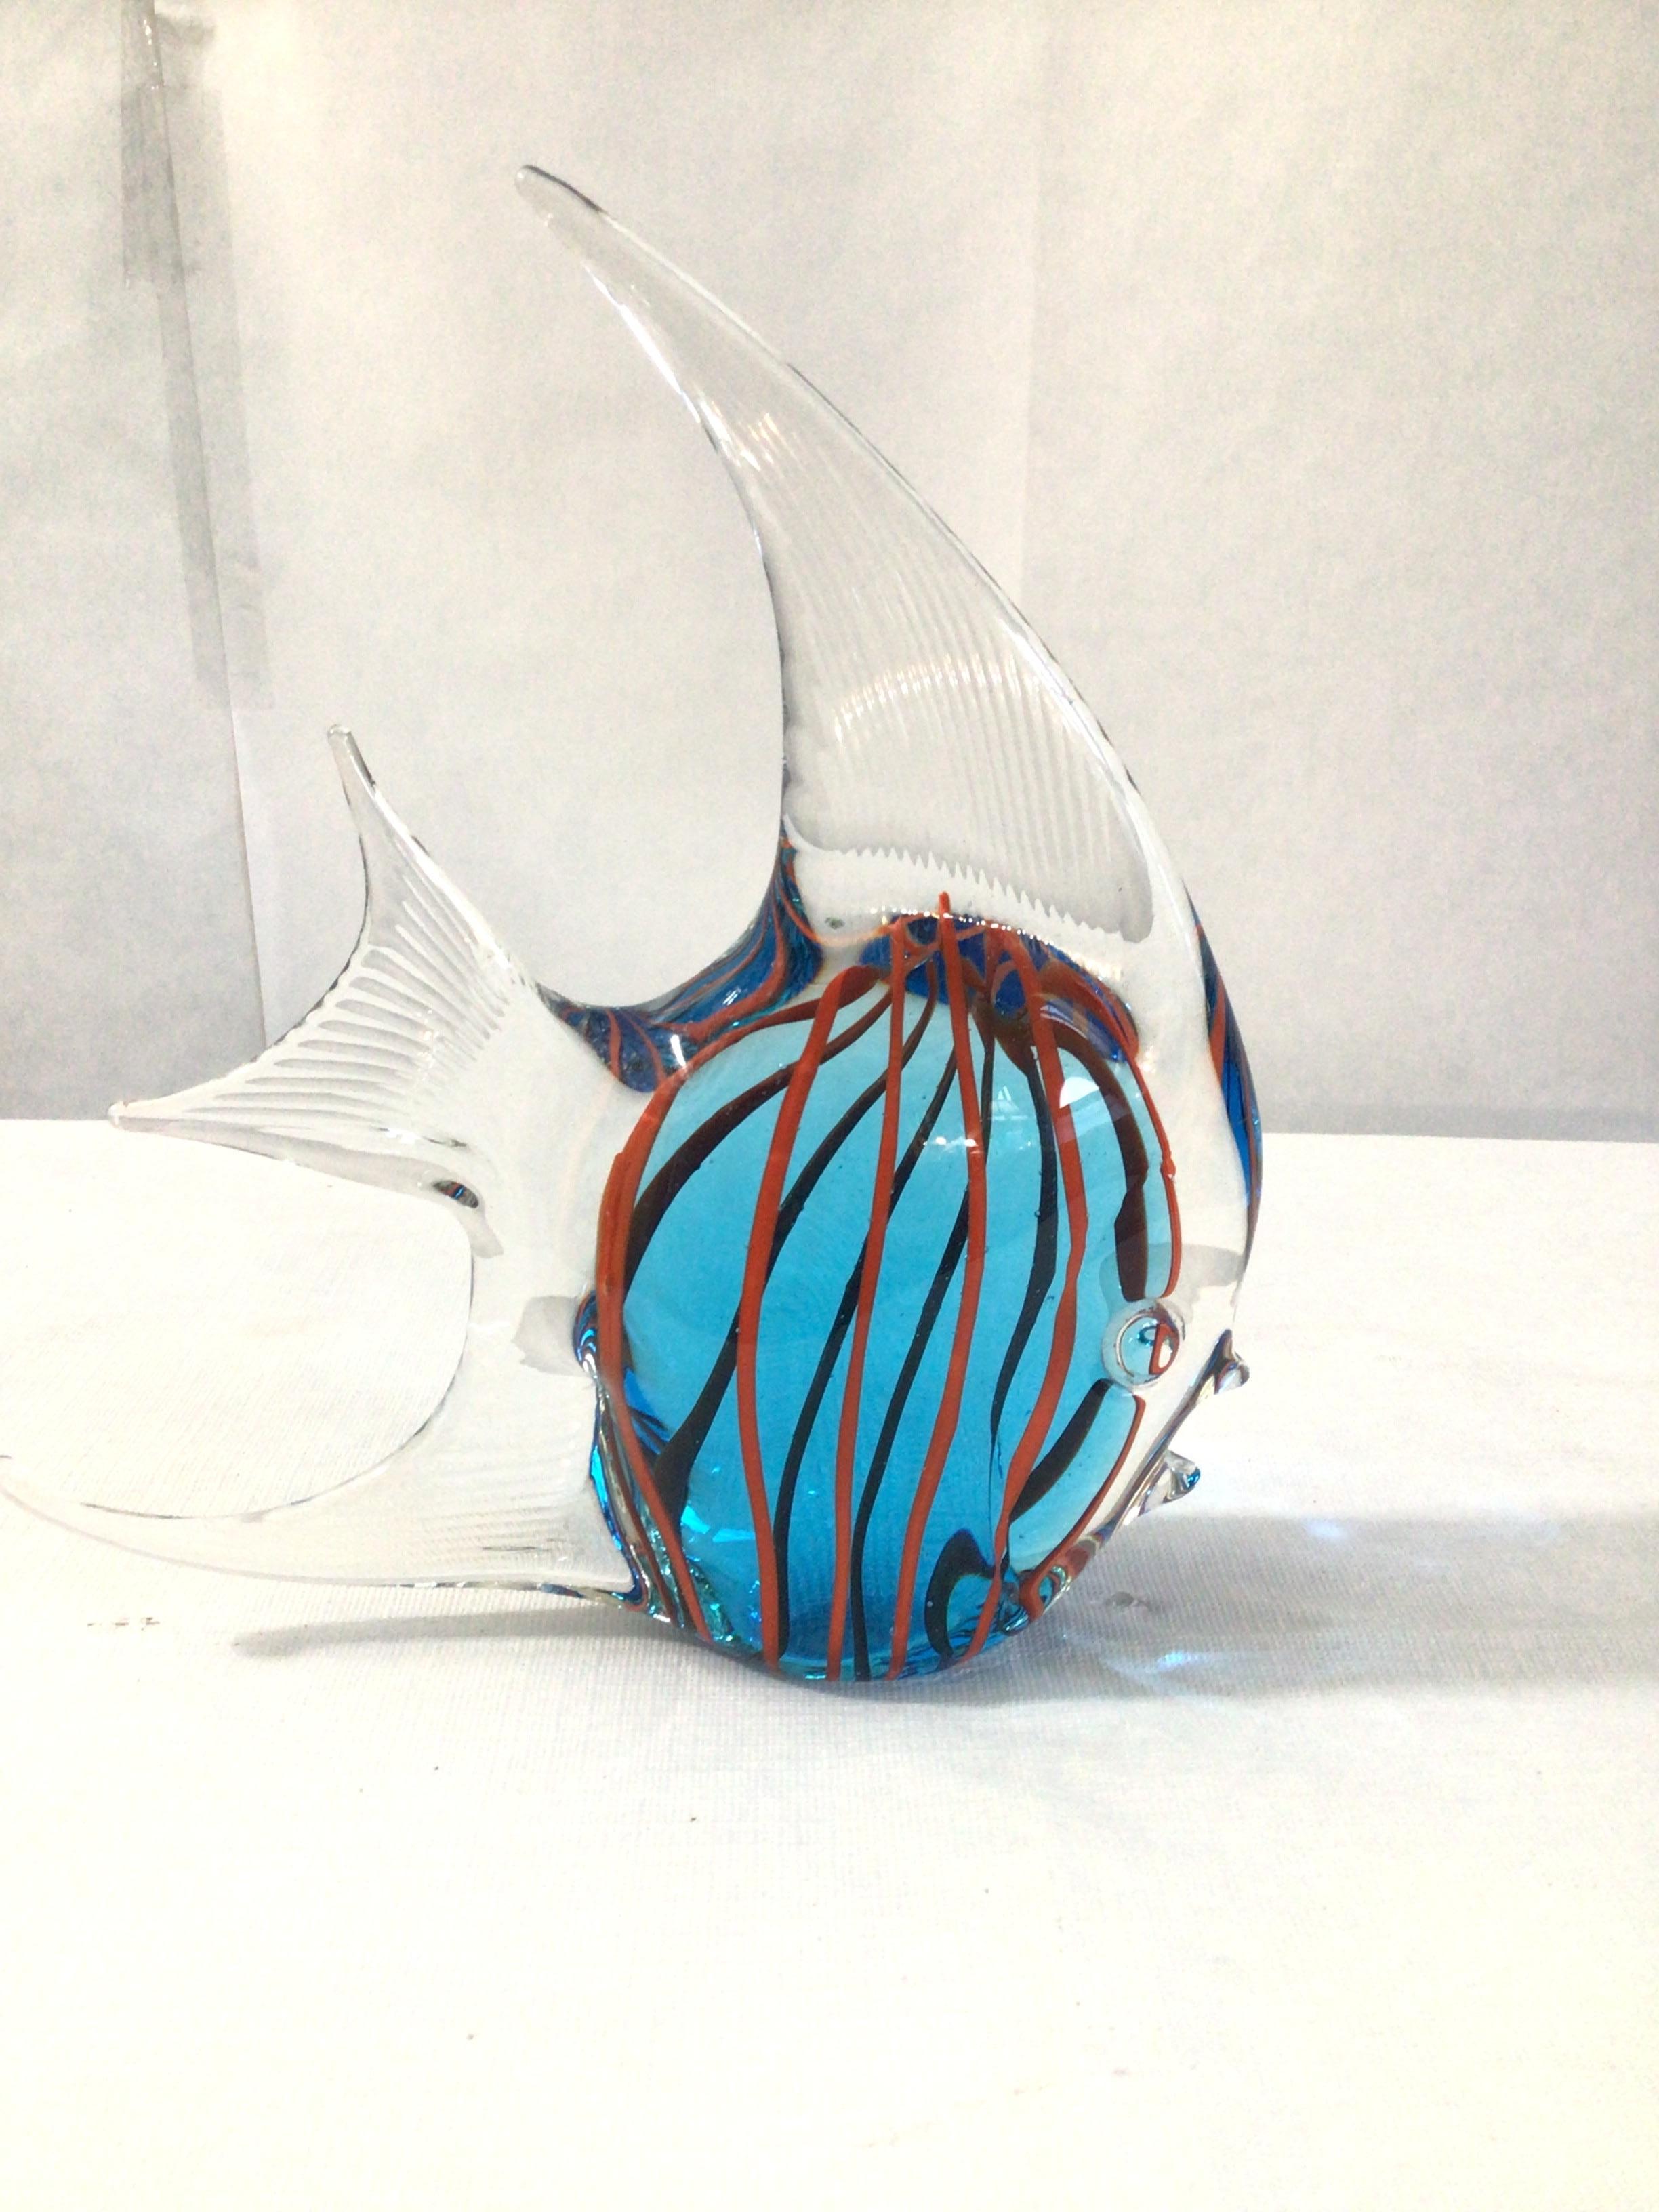 1960s Murano Style Colorful Art Glass Angel Fish Sculpture
Œuvre d'art unique réalisée à la main
Couleurs : bleu, rouge et verre transparent.